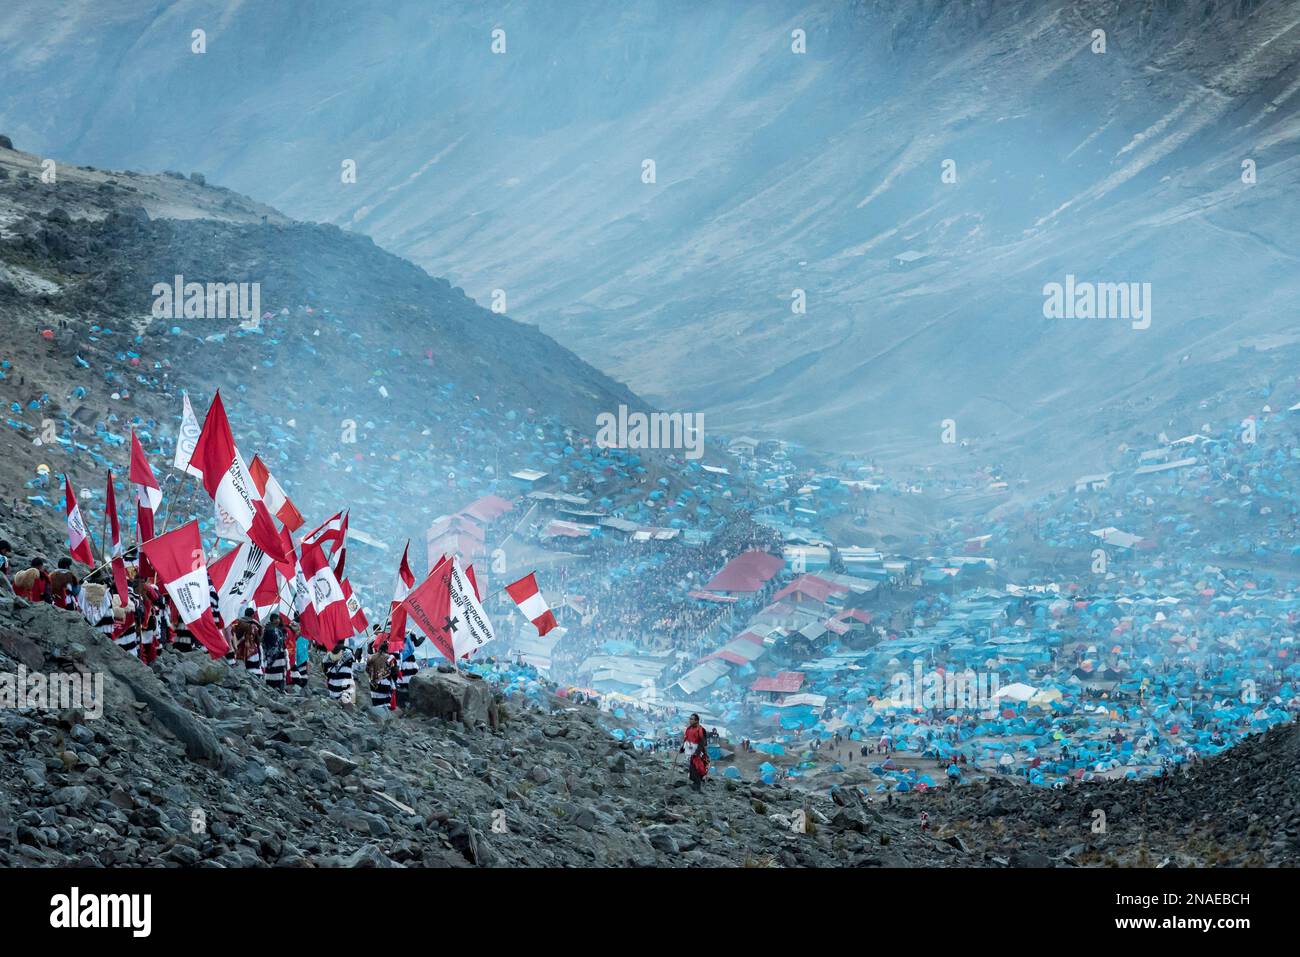 Pilgrims descending the holy mountain, Qullyurit'i festival Stock Photo